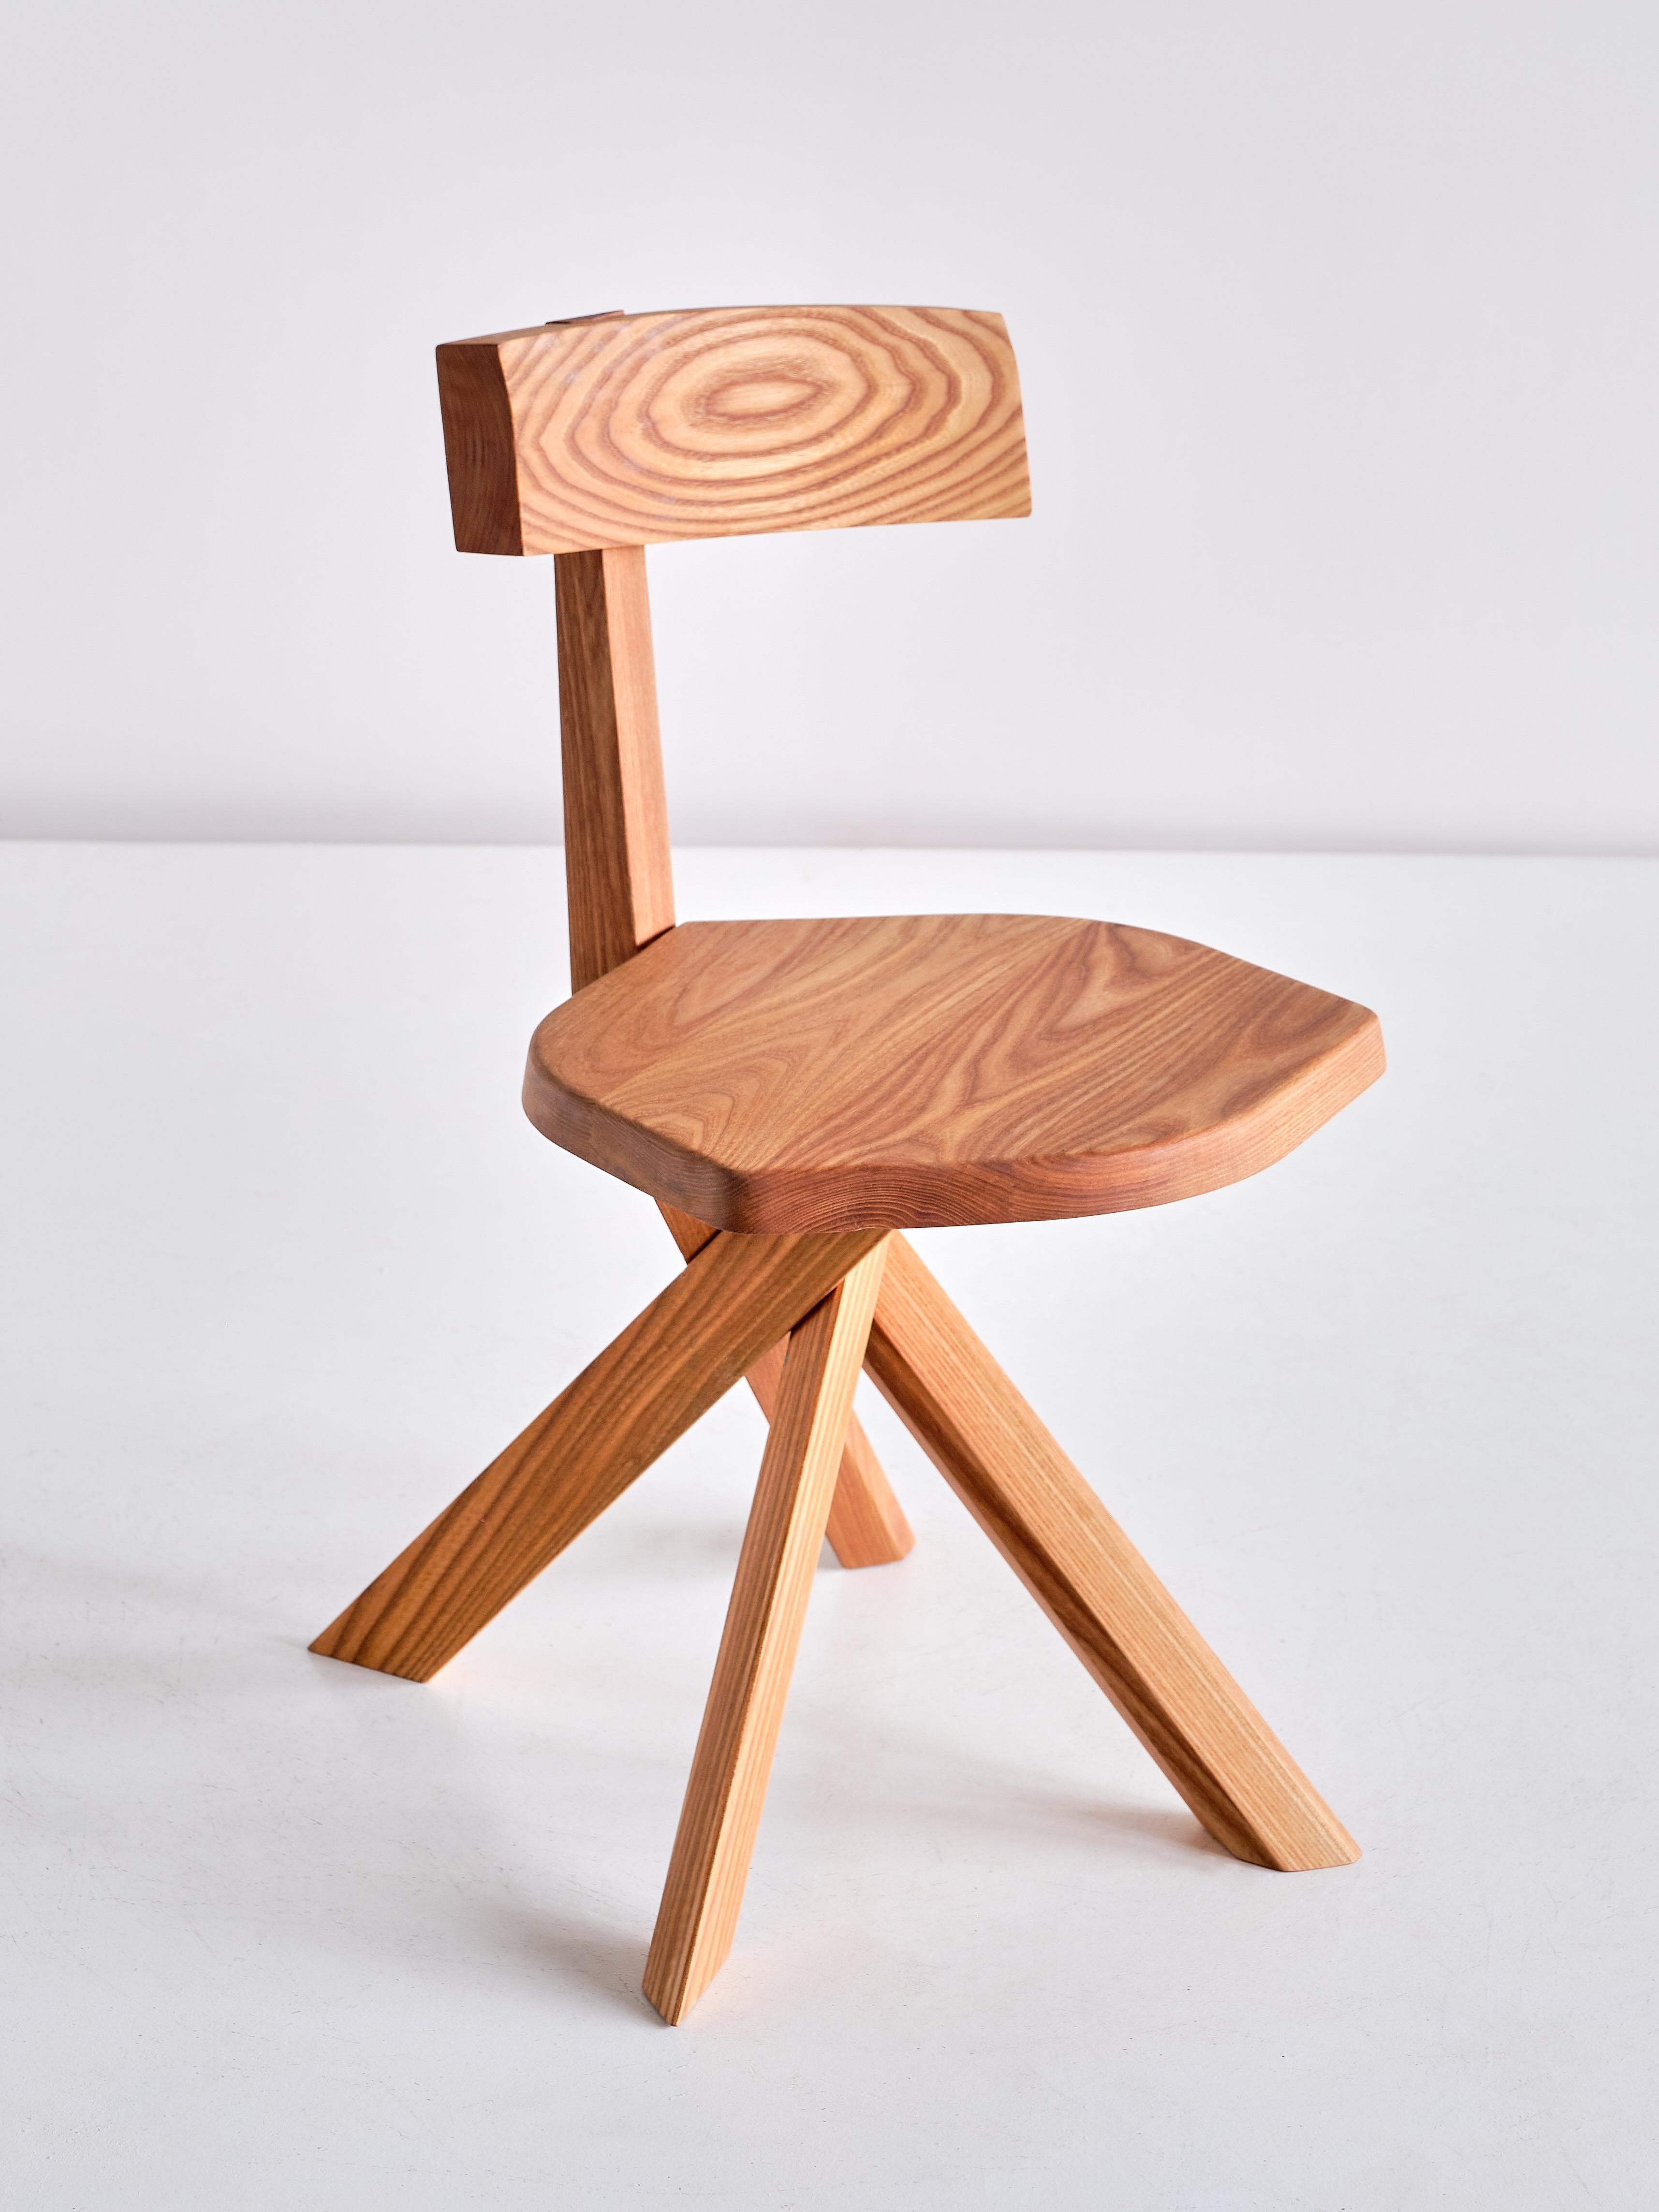 Cette étonnante chaise à quatre pieds est le modèle S34 conçu par Pierre Chapo en 1973. Ce design emblématique est marqué par ses quatre pieds en faisceau, son assise de forme polygonale et son dossier asymétrique monté dans le prolongement de l'un